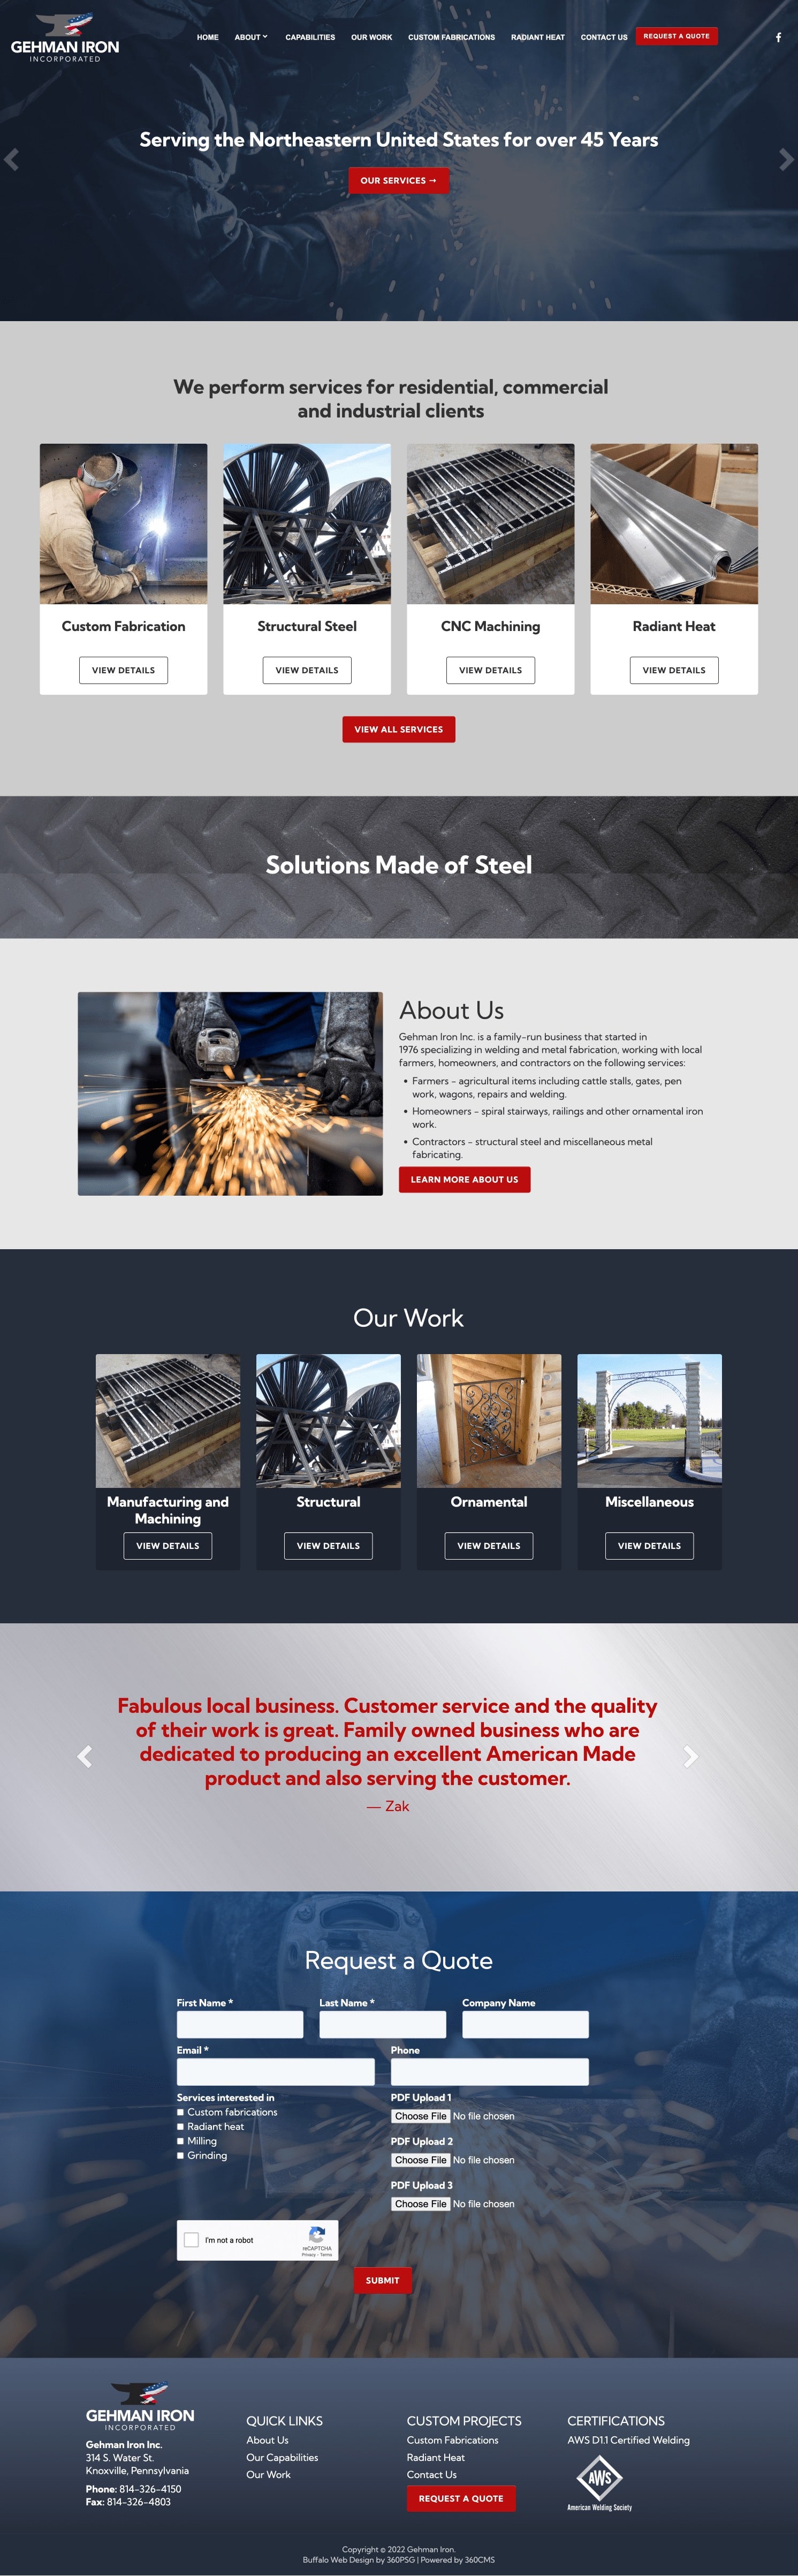 Gehman Iron Website - Desktop